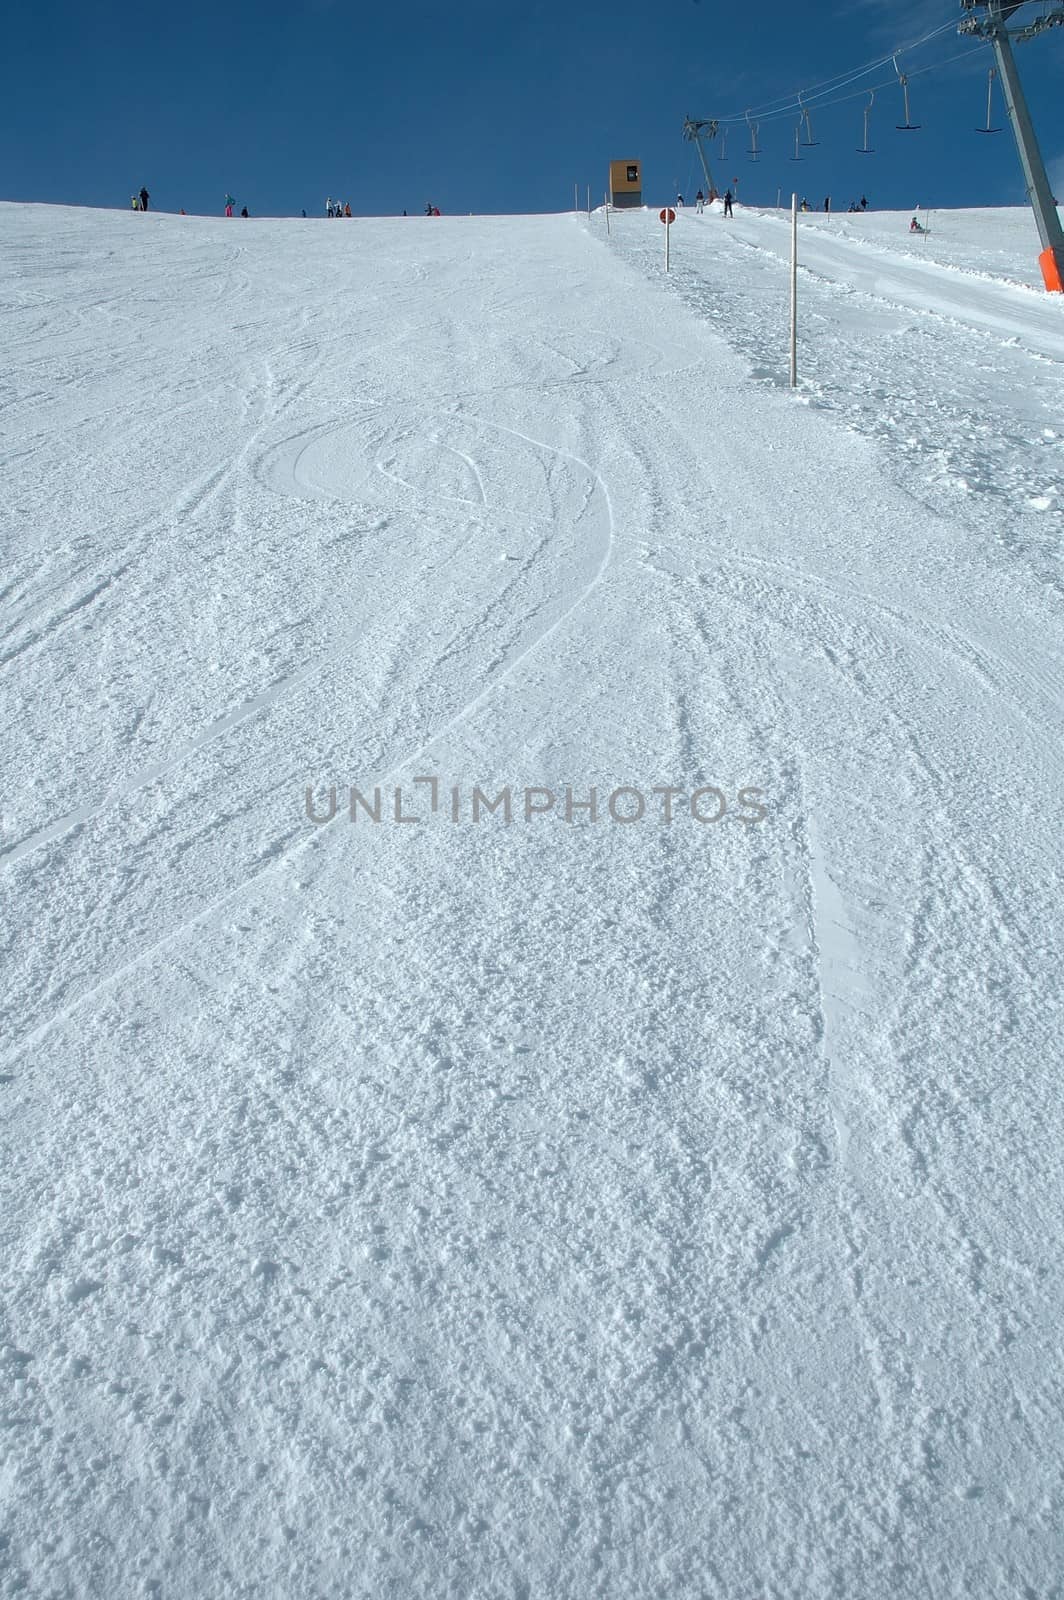 Ski slope by janhetman